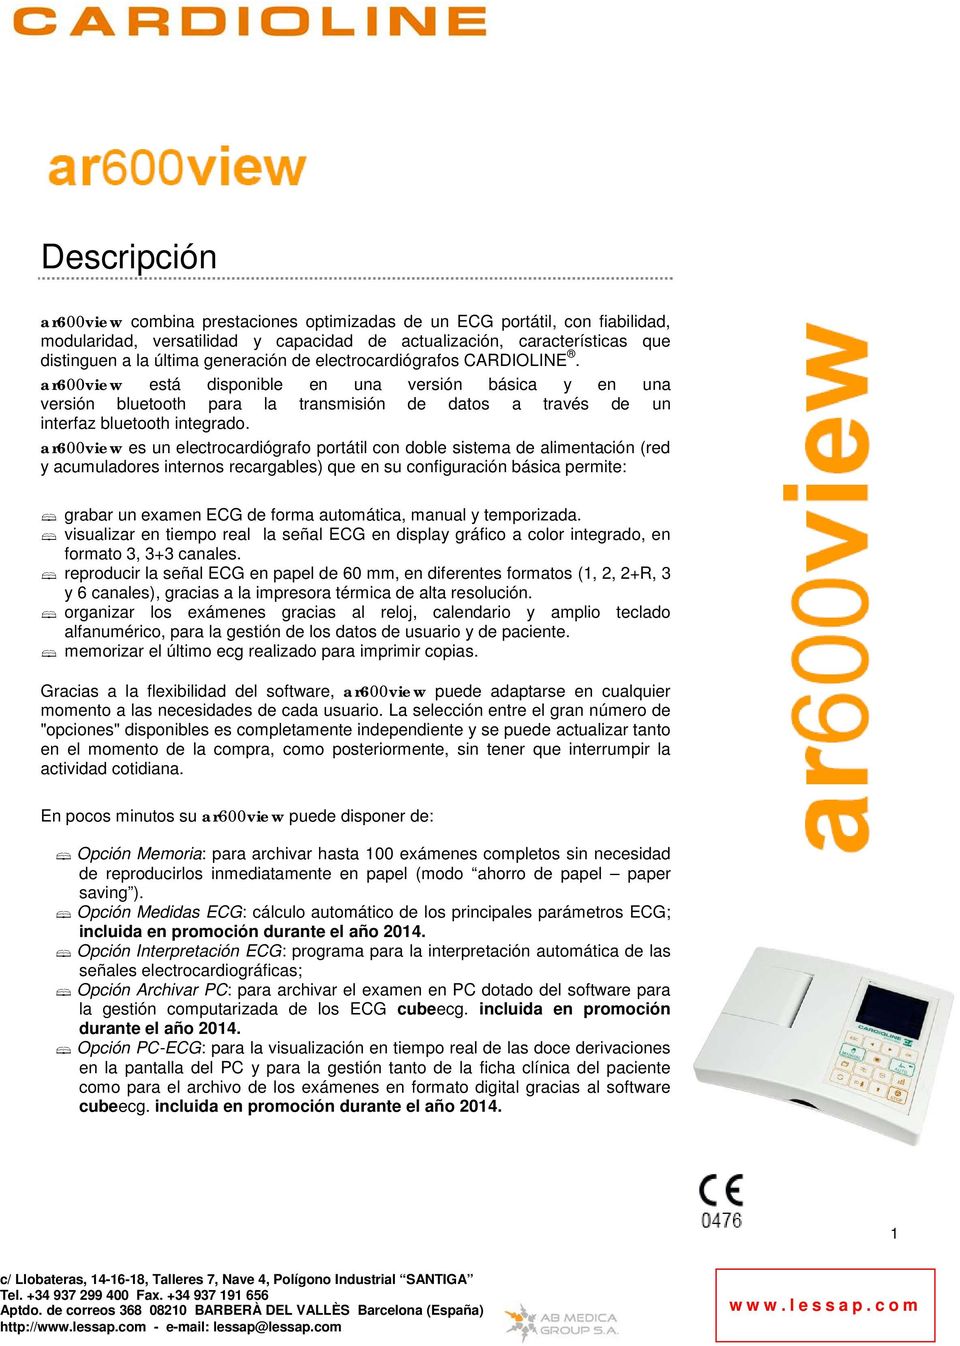 ar600view es un electrocardiógrafo portátil con doble sistema de alimentación (red y acumuladores internos recargables) que en su configuración básica permite: grabar un examen ECG de forma